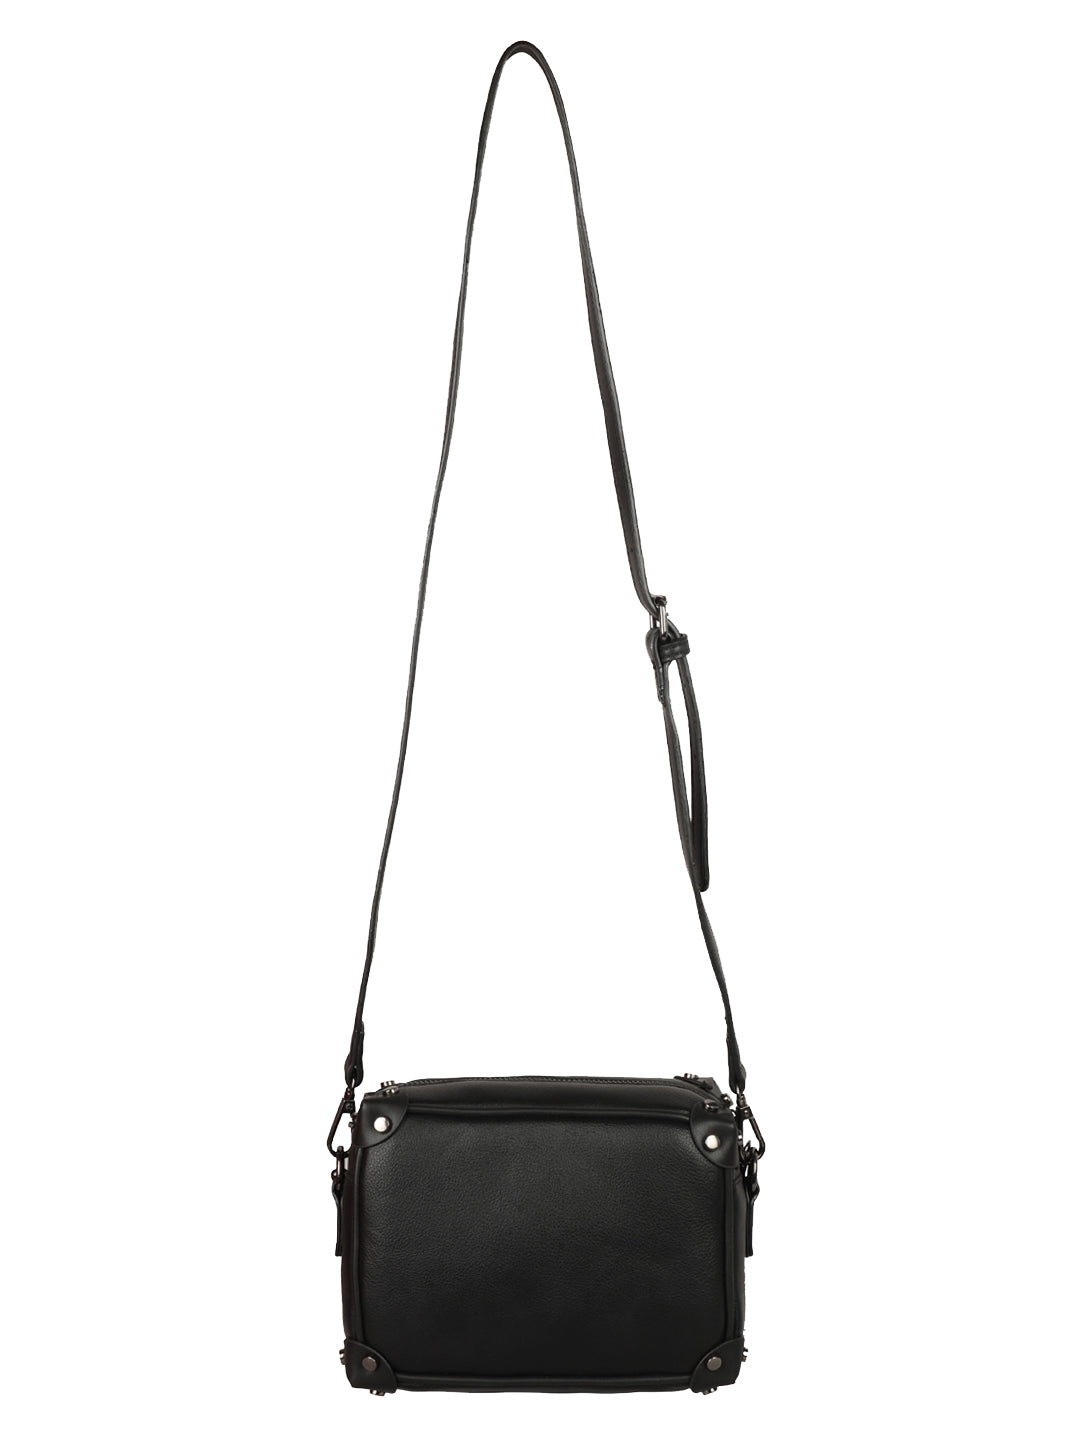 ALI FASHION Korean Style Elegant Sling Bag for Women Sale Good Quality Shoulder  Bag Top Handle Bag Handbag 042 | Lazada PH